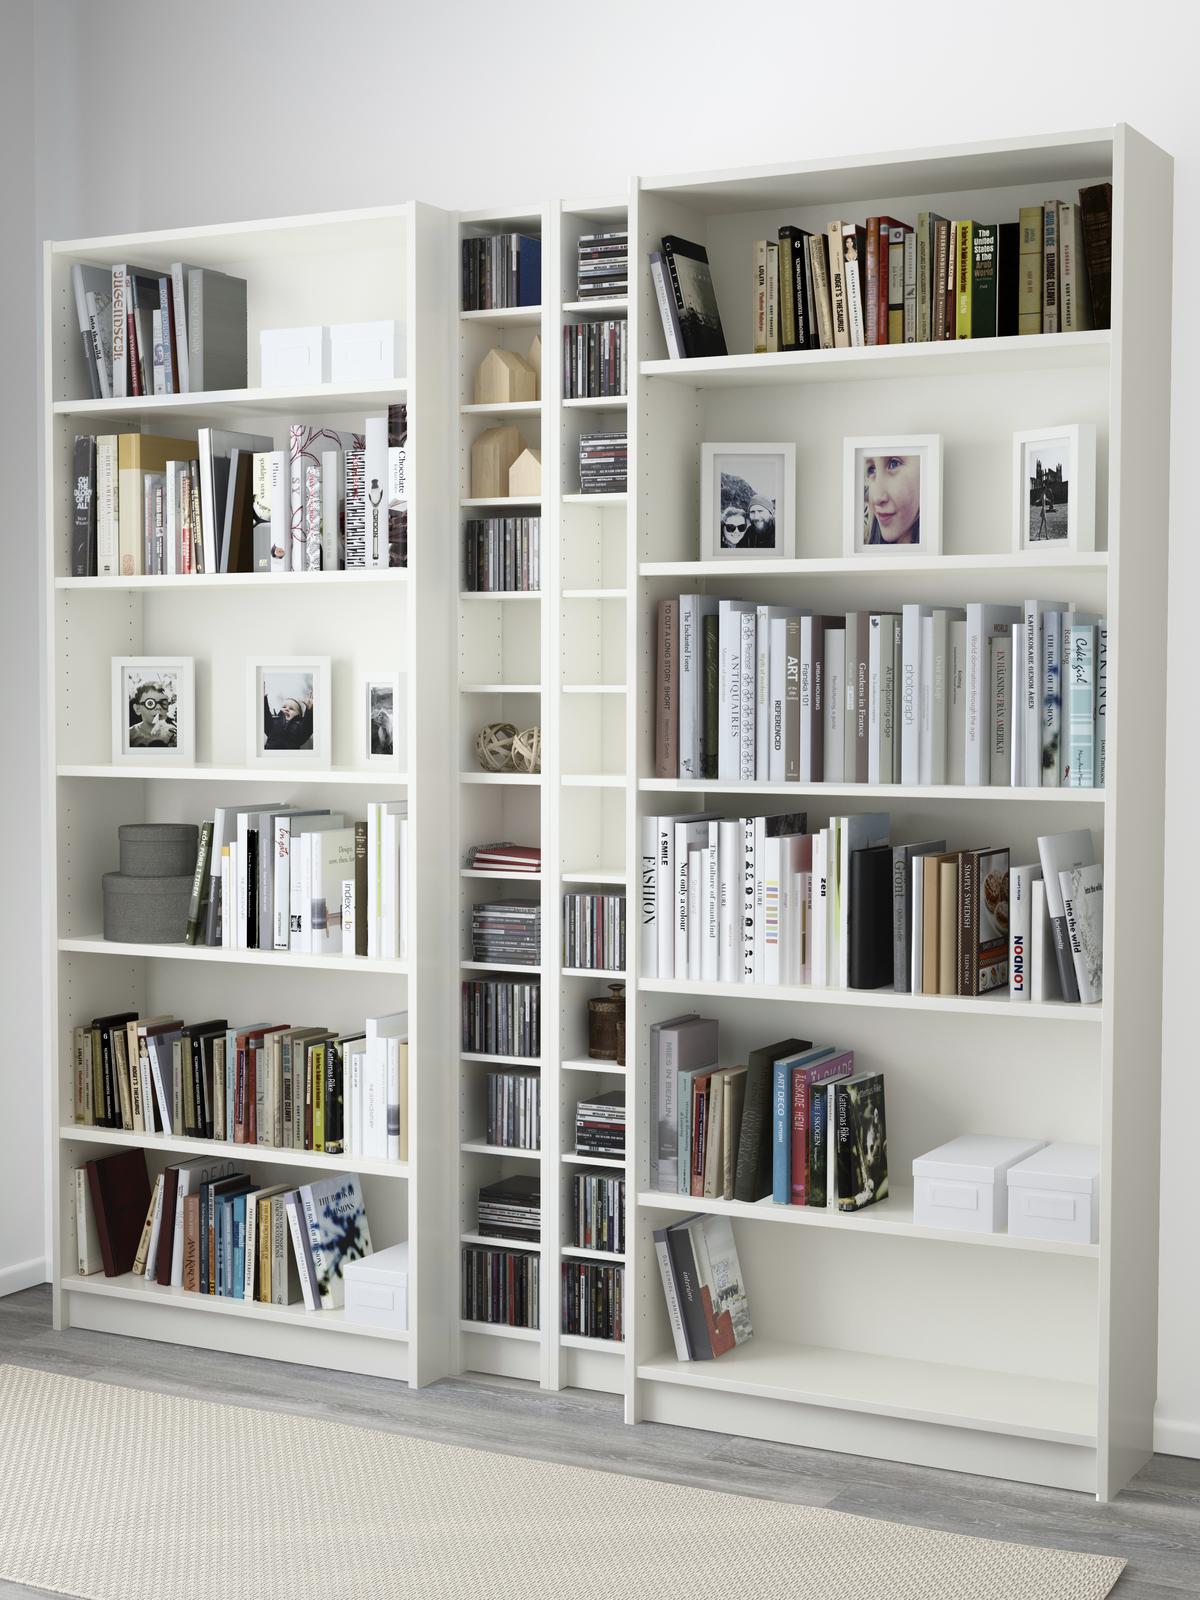 A bookcase